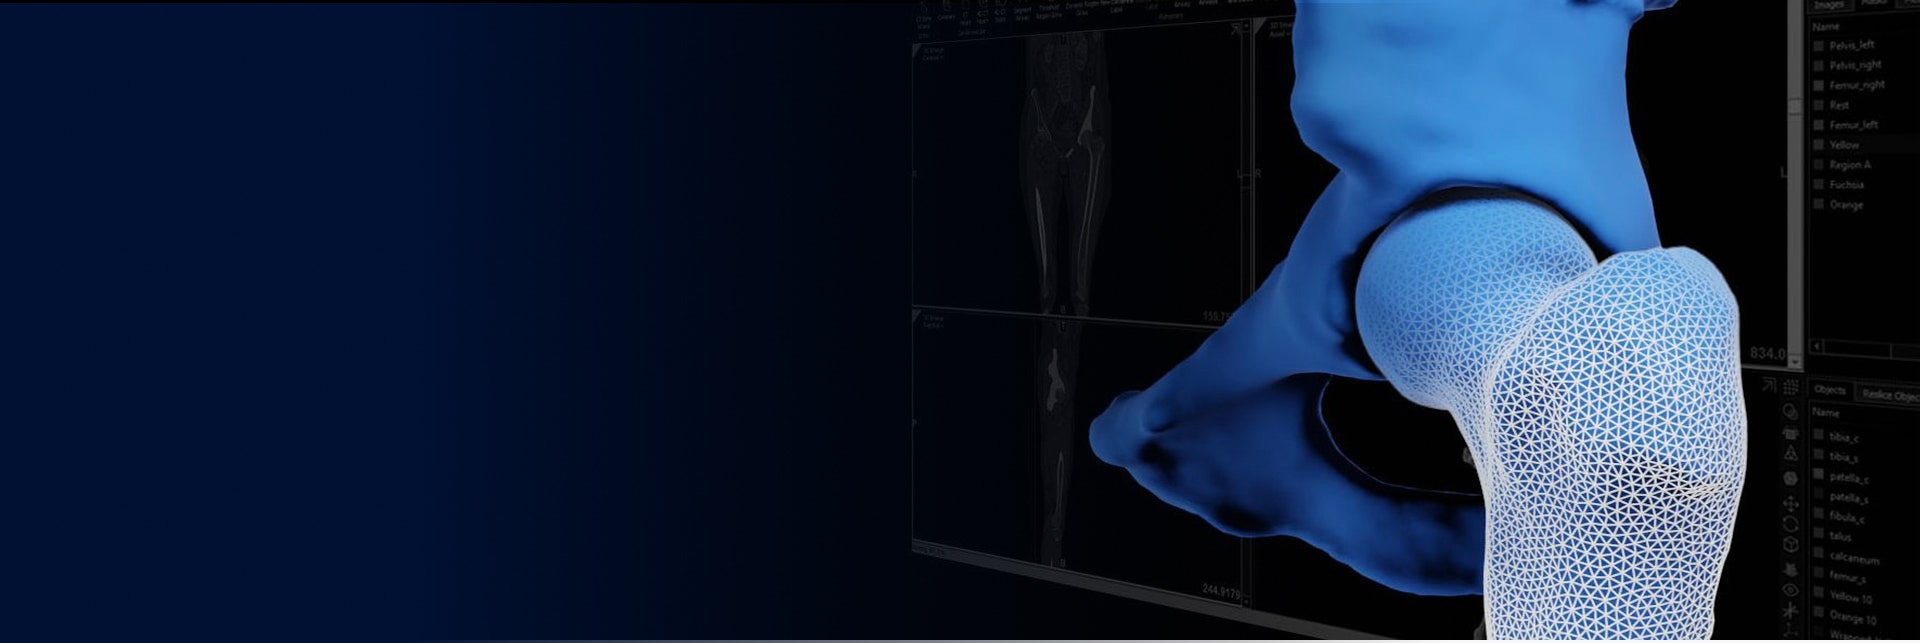 Digitales Bild eines Knochens mit Markierungen auf dem unteren Vorderteil